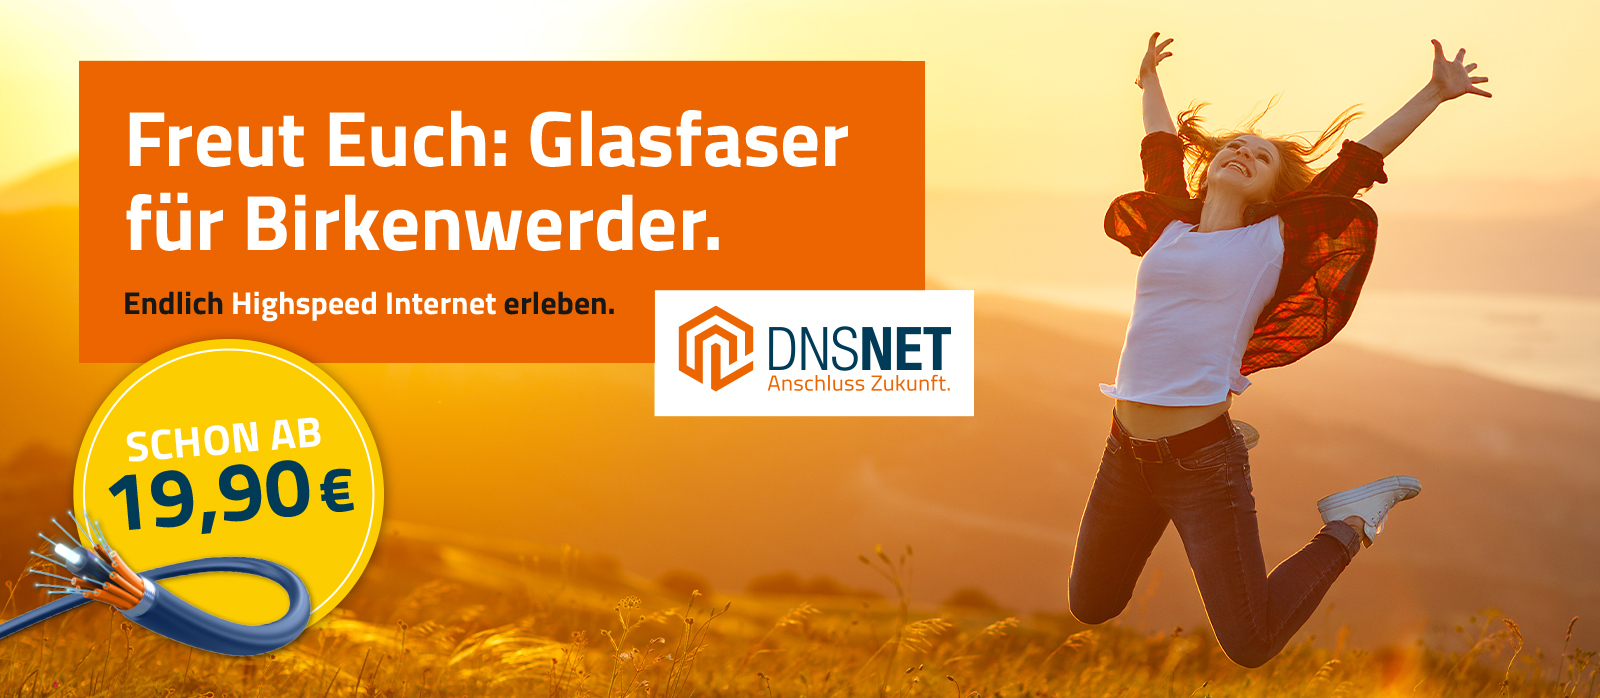 DNSNET-Web-Banner-Birkenwerder-1600x698